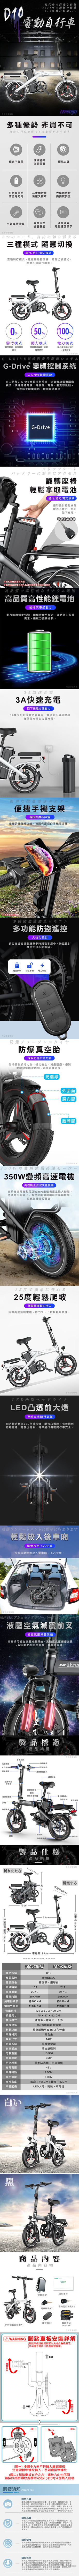 【iFreego】D10電動自行車 電力/電助力/人力 14吋輪胎 摺疊收納